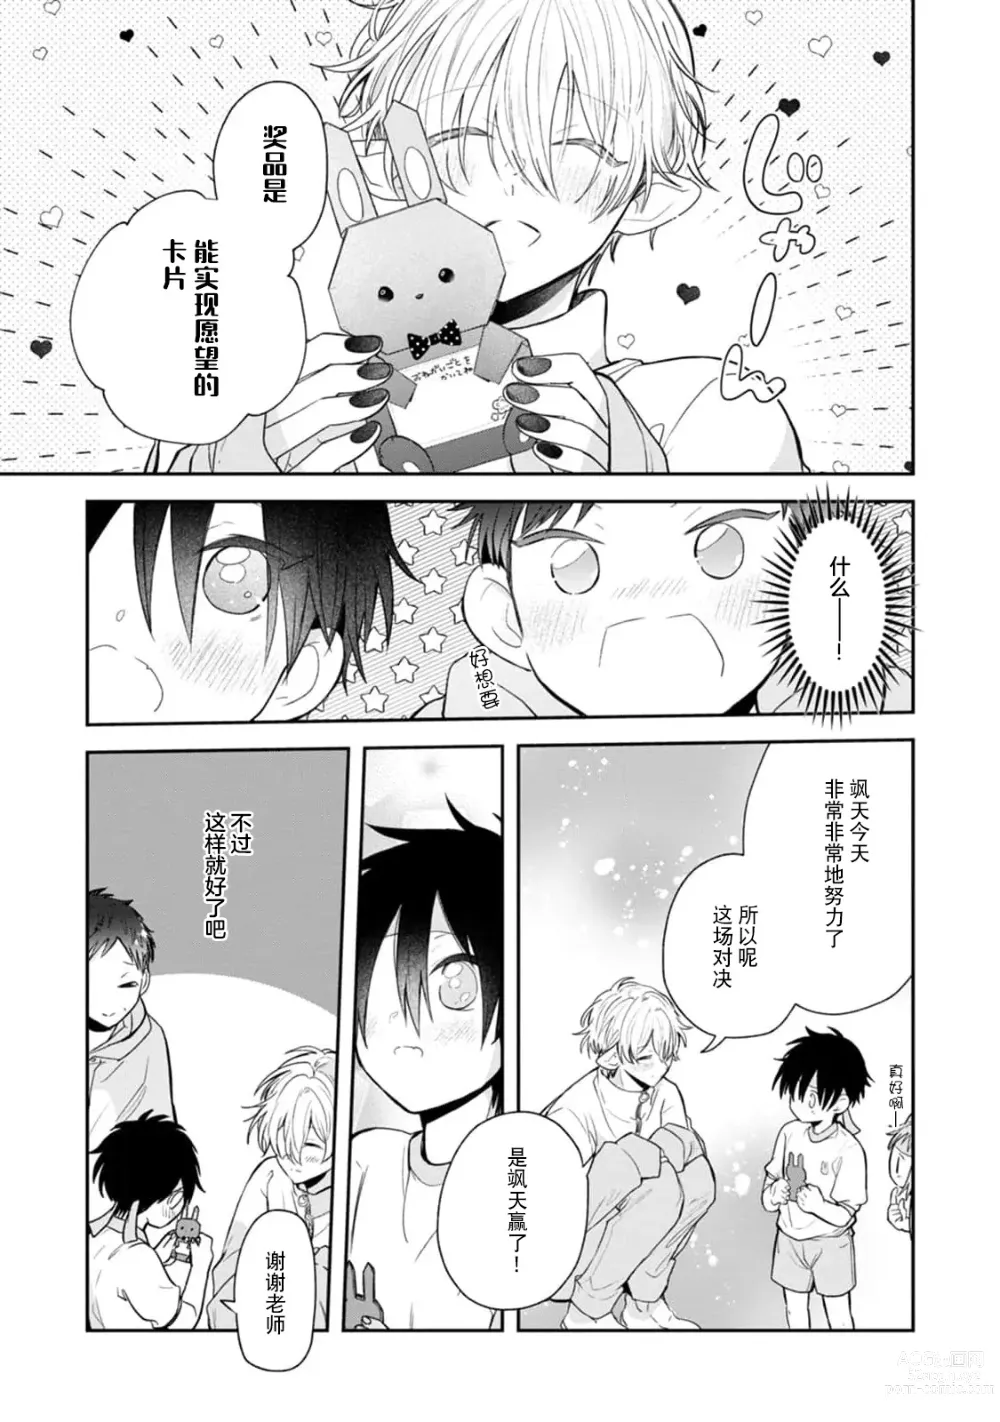 Page 135 of manga 叶羽老师全部是第一次 1-4